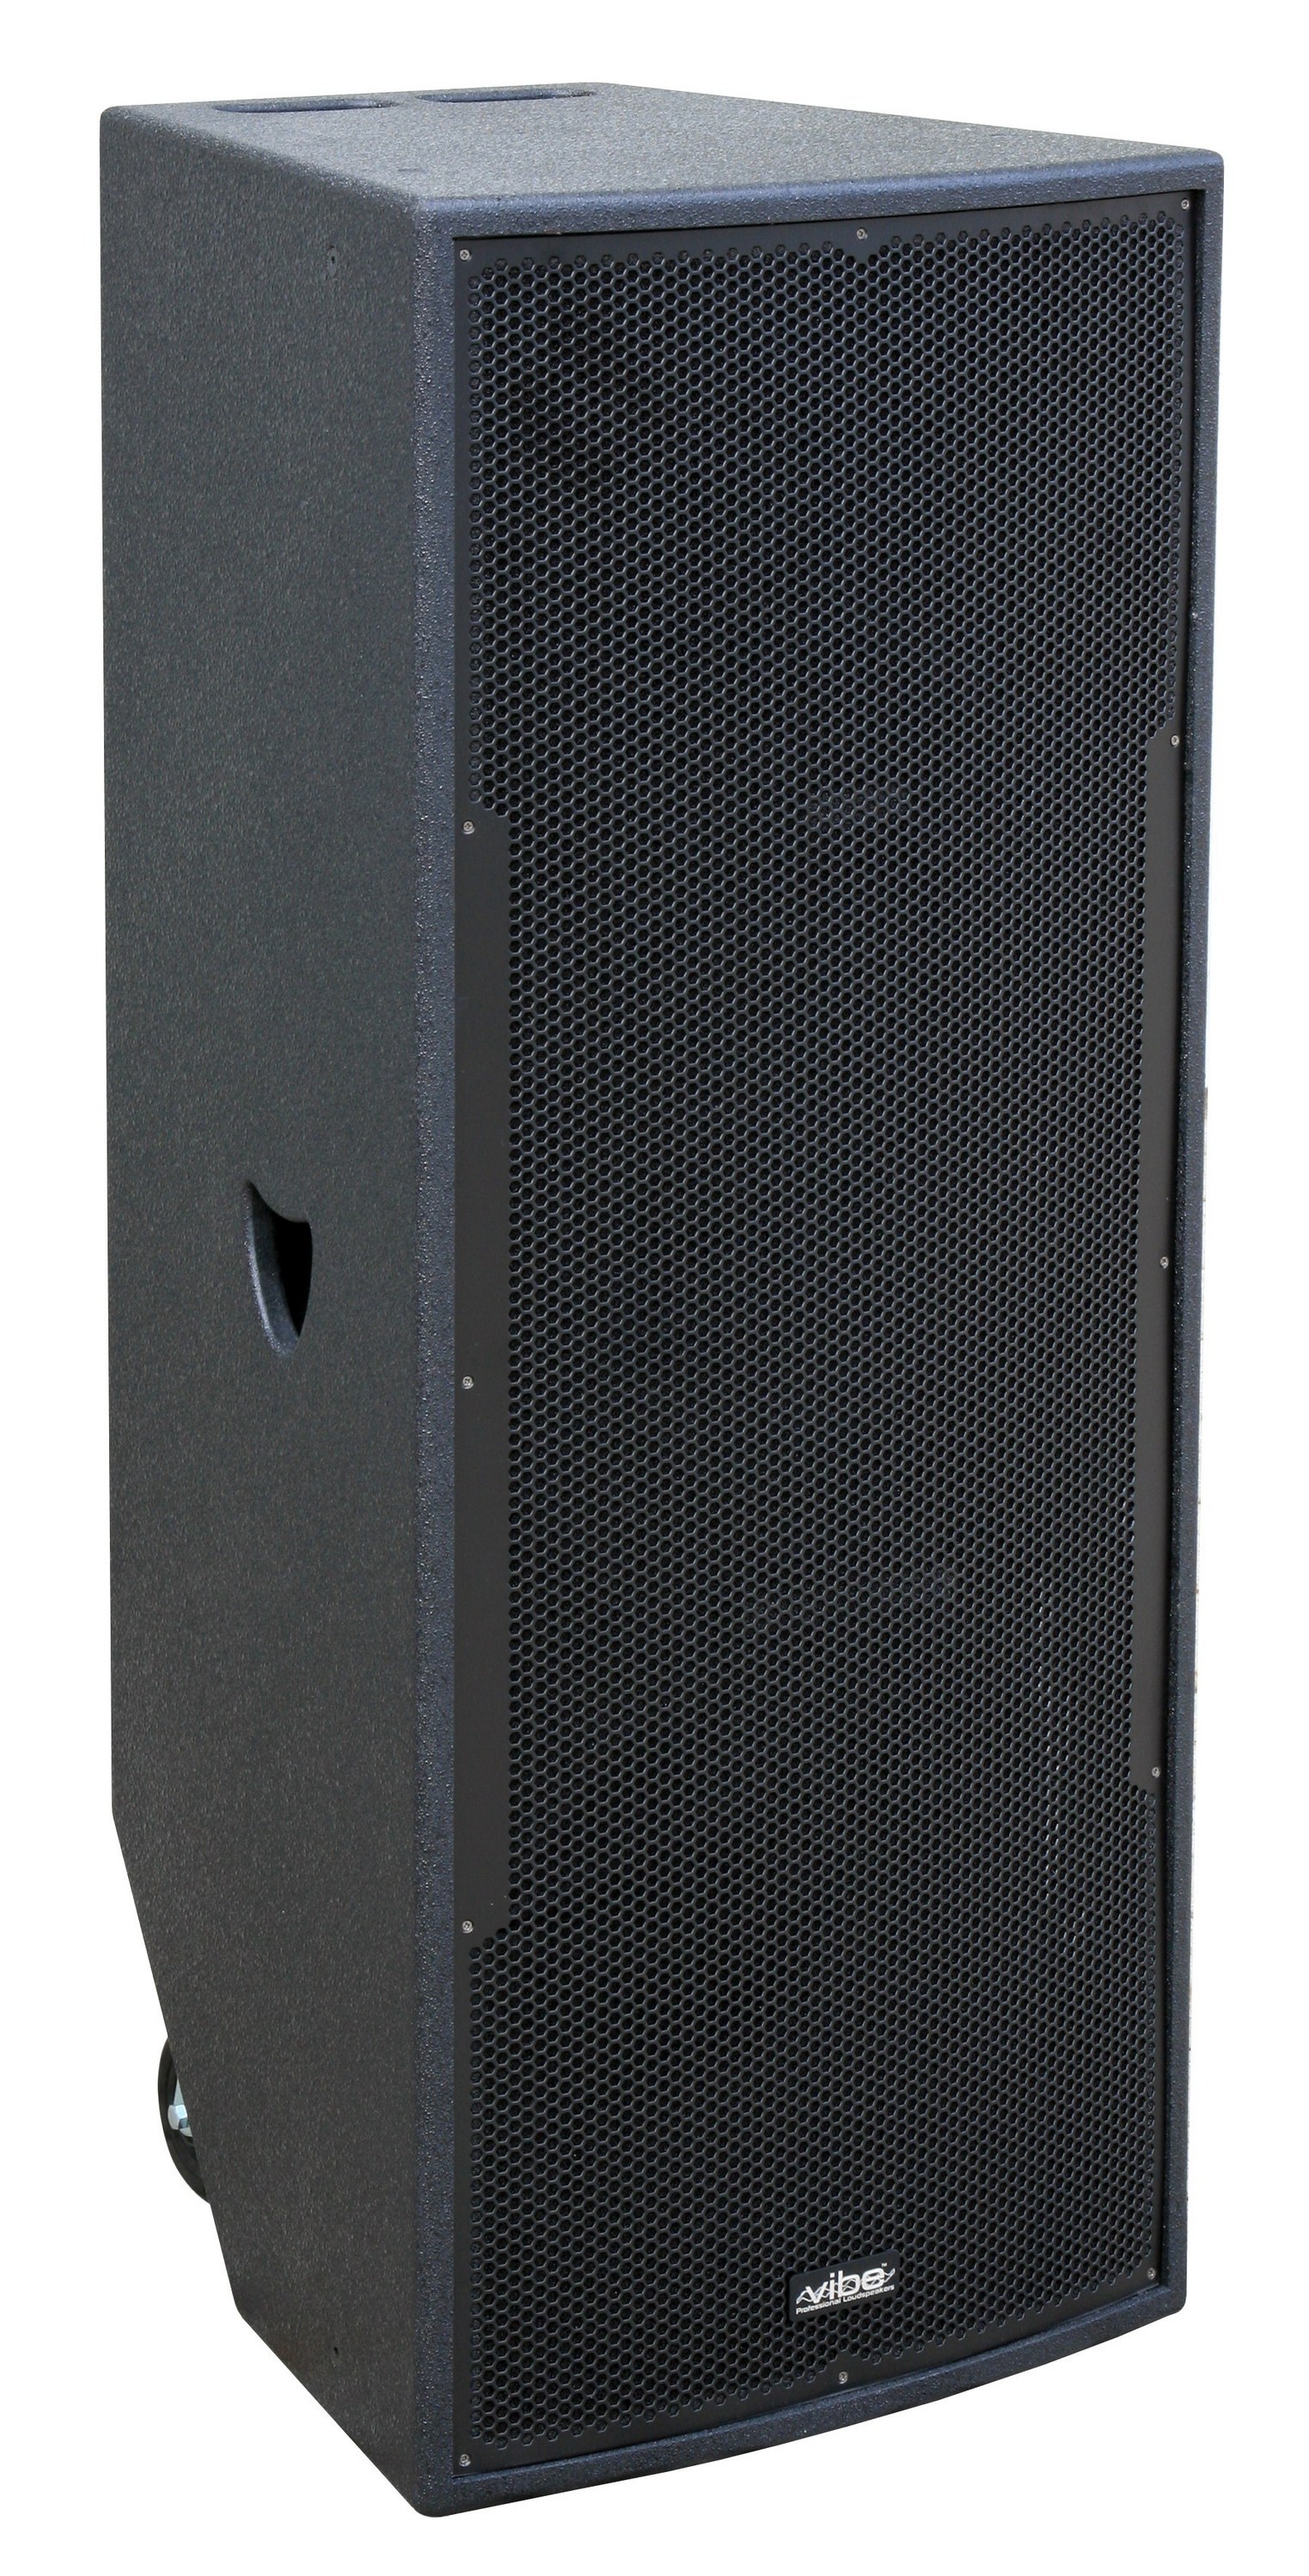 Pro speaker: 2x 15" - 800Wrms / 4ohm